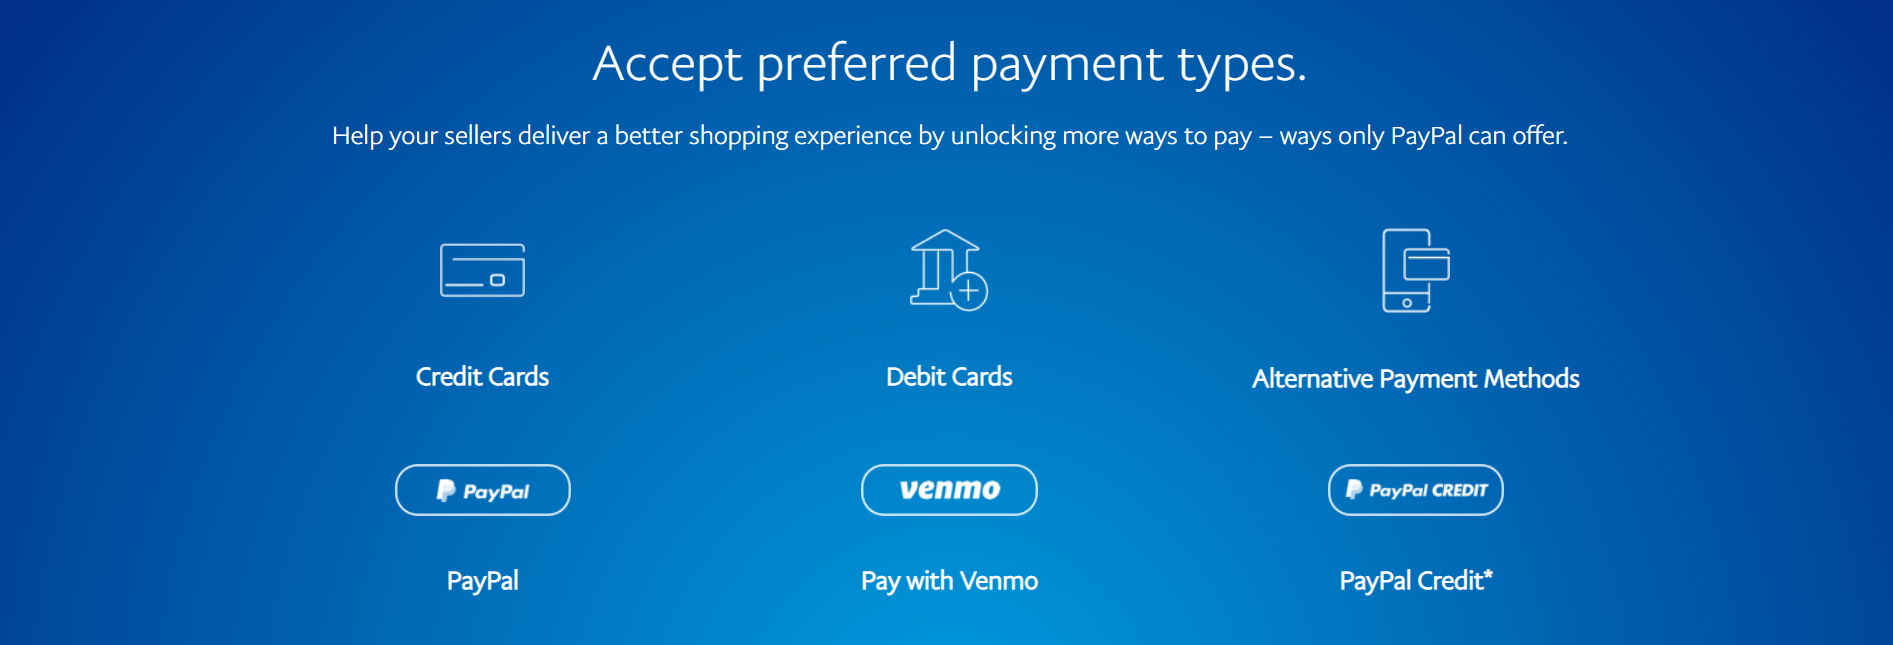 PayPal Commerce Platform - Payment Options